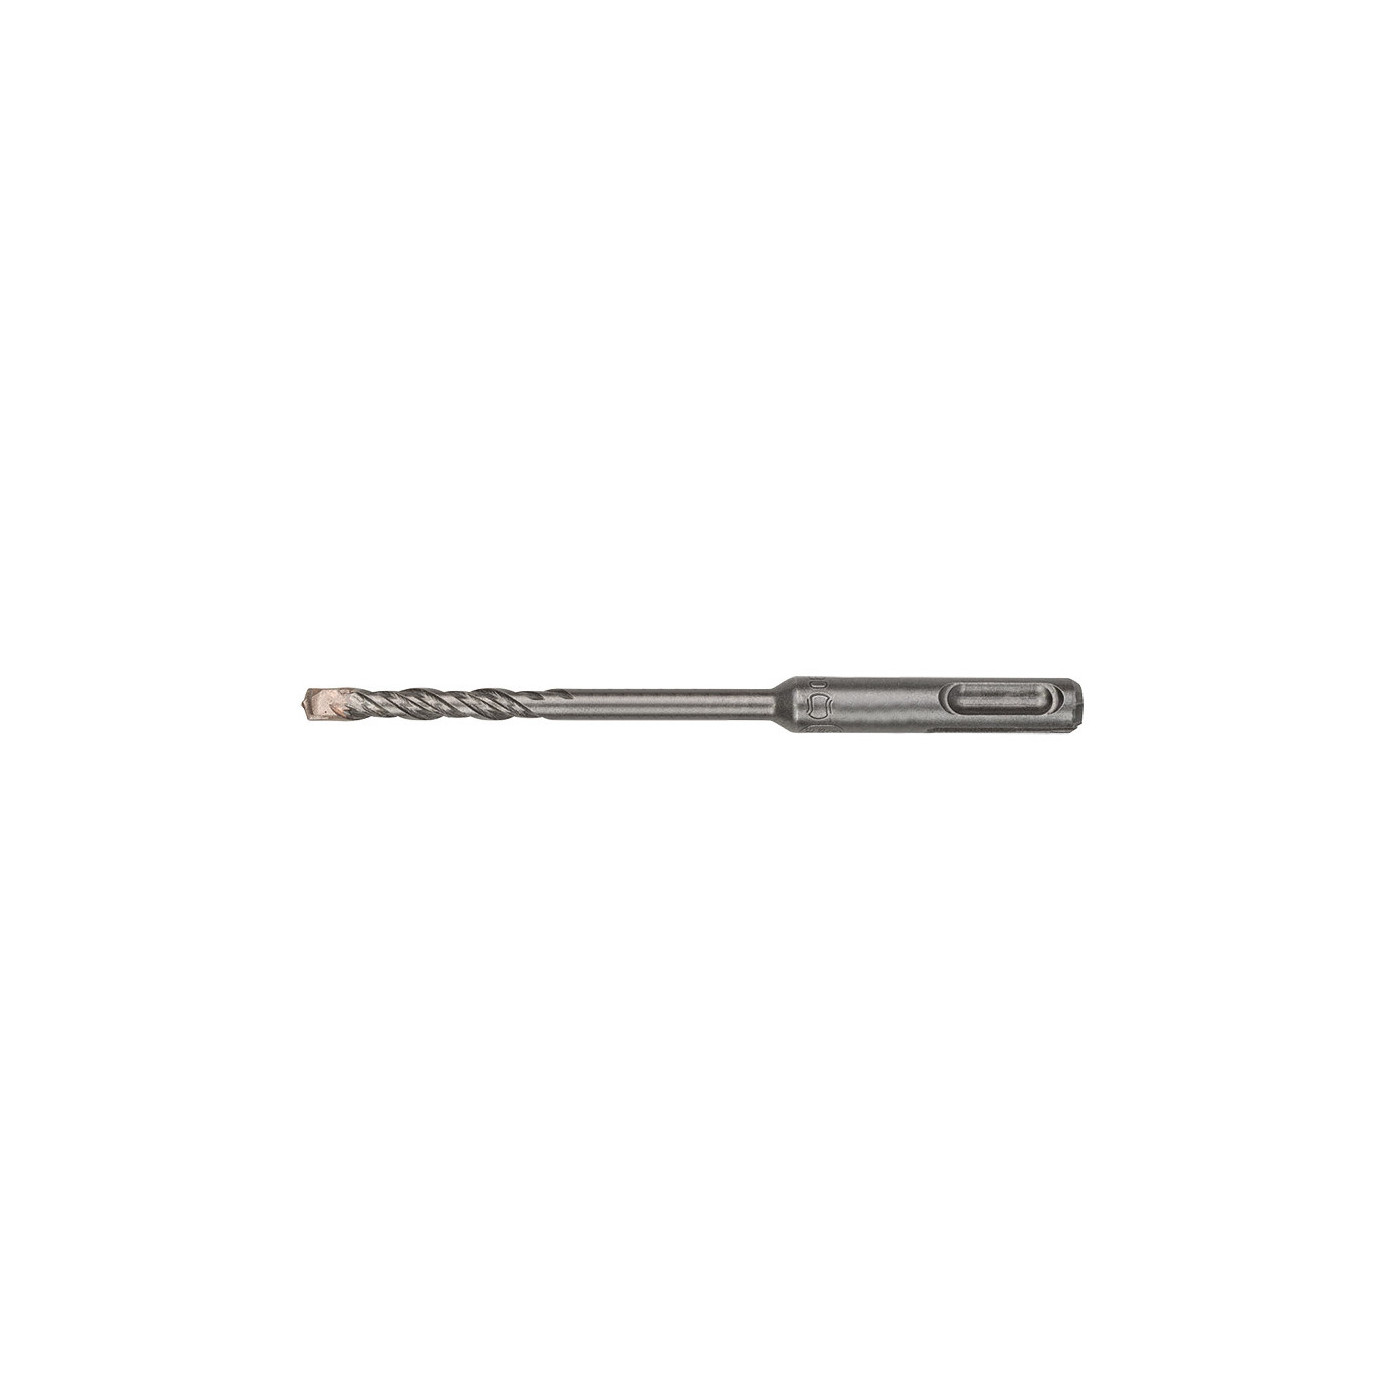 SDS PLUS hammer drill bit (6x160 mm)